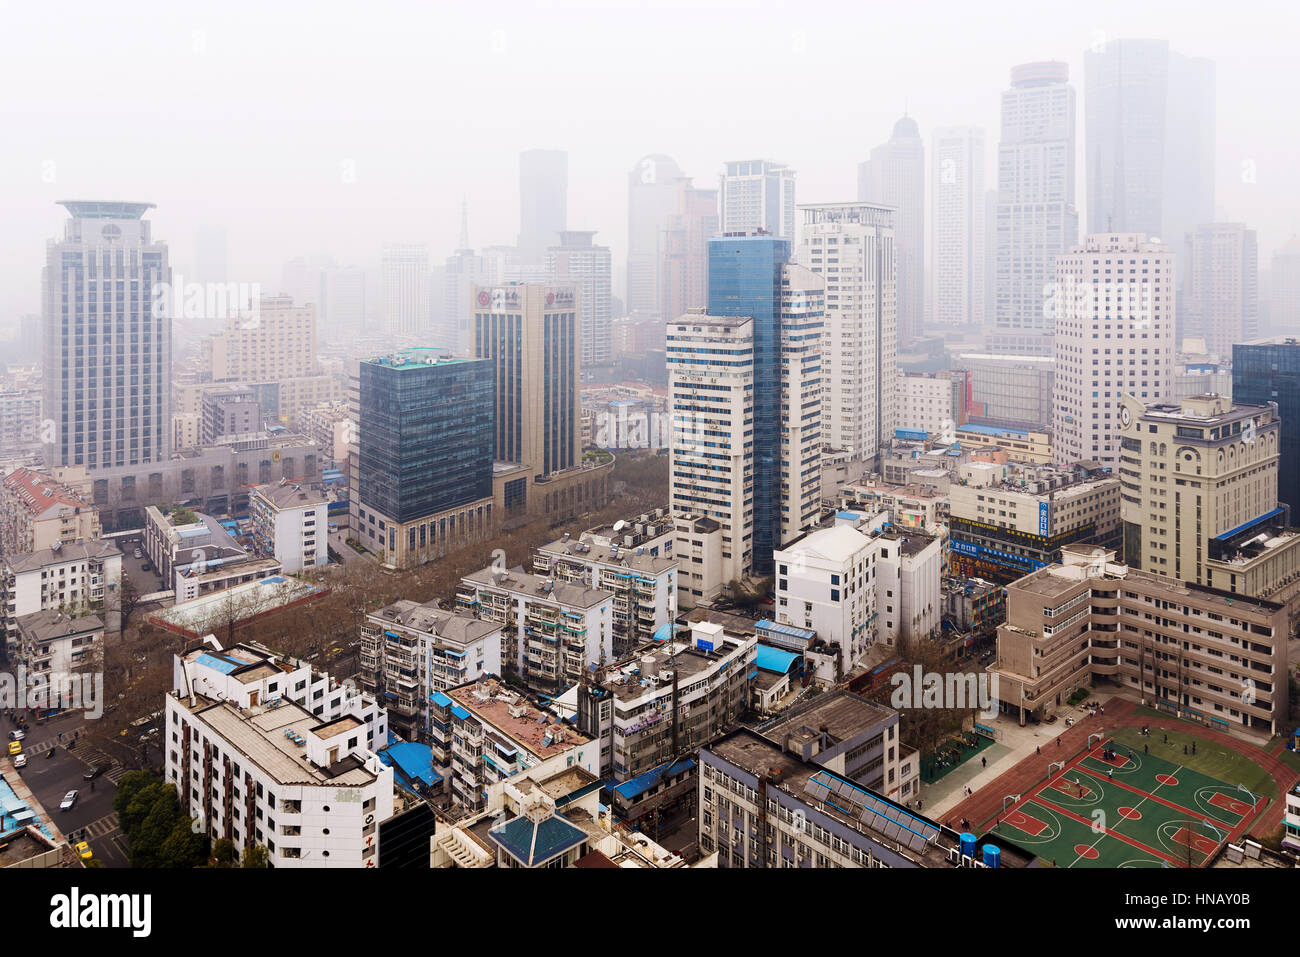 NANJING, Cina - 18 Marzo: Xinjiekou quartiere finanziario in Nanjing su un nebbioso giorno. Questa è l'area del centro cittadino di Nanjing dove molte banche e uffici c Foto Stock